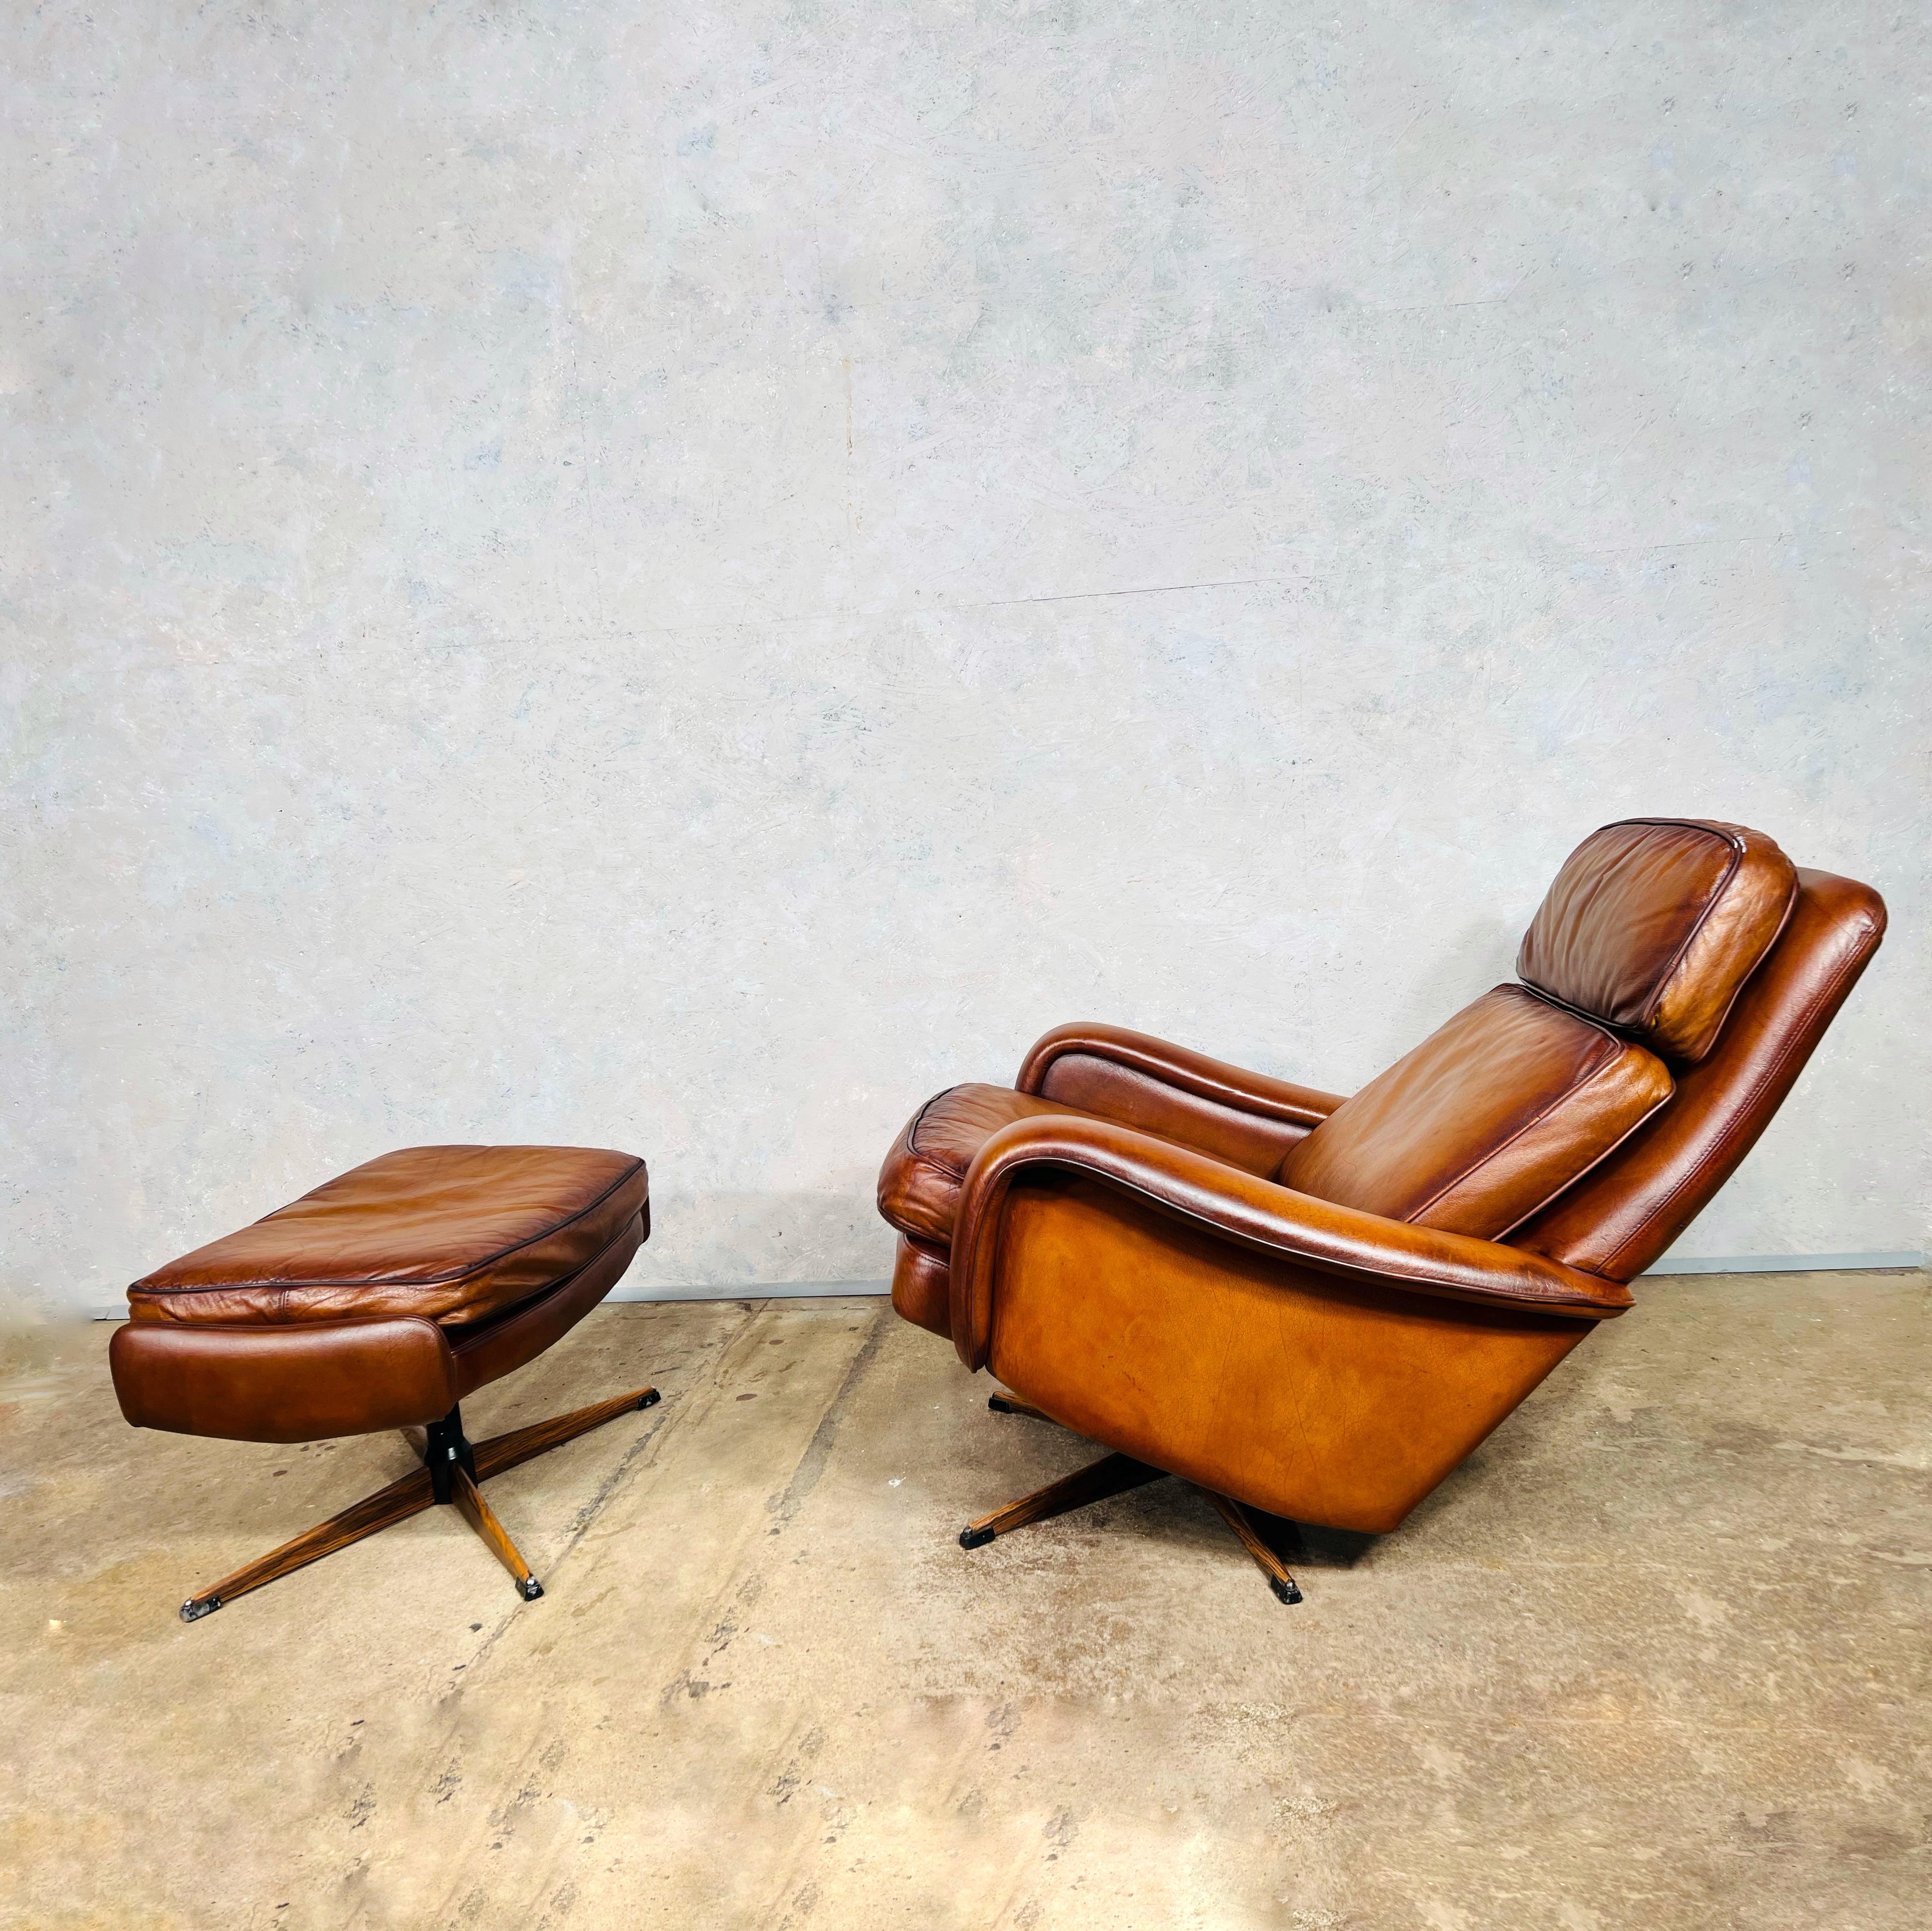 Superbe chaise pivotante et tabouret en cuir à dossier basculant de style Vintage By des années 1970. Cuir grainé de haute qualité avec une fantastique couleur Tan.
Belle patine et finition. Le fauteuil est doté d'un mécanisme de basculement du